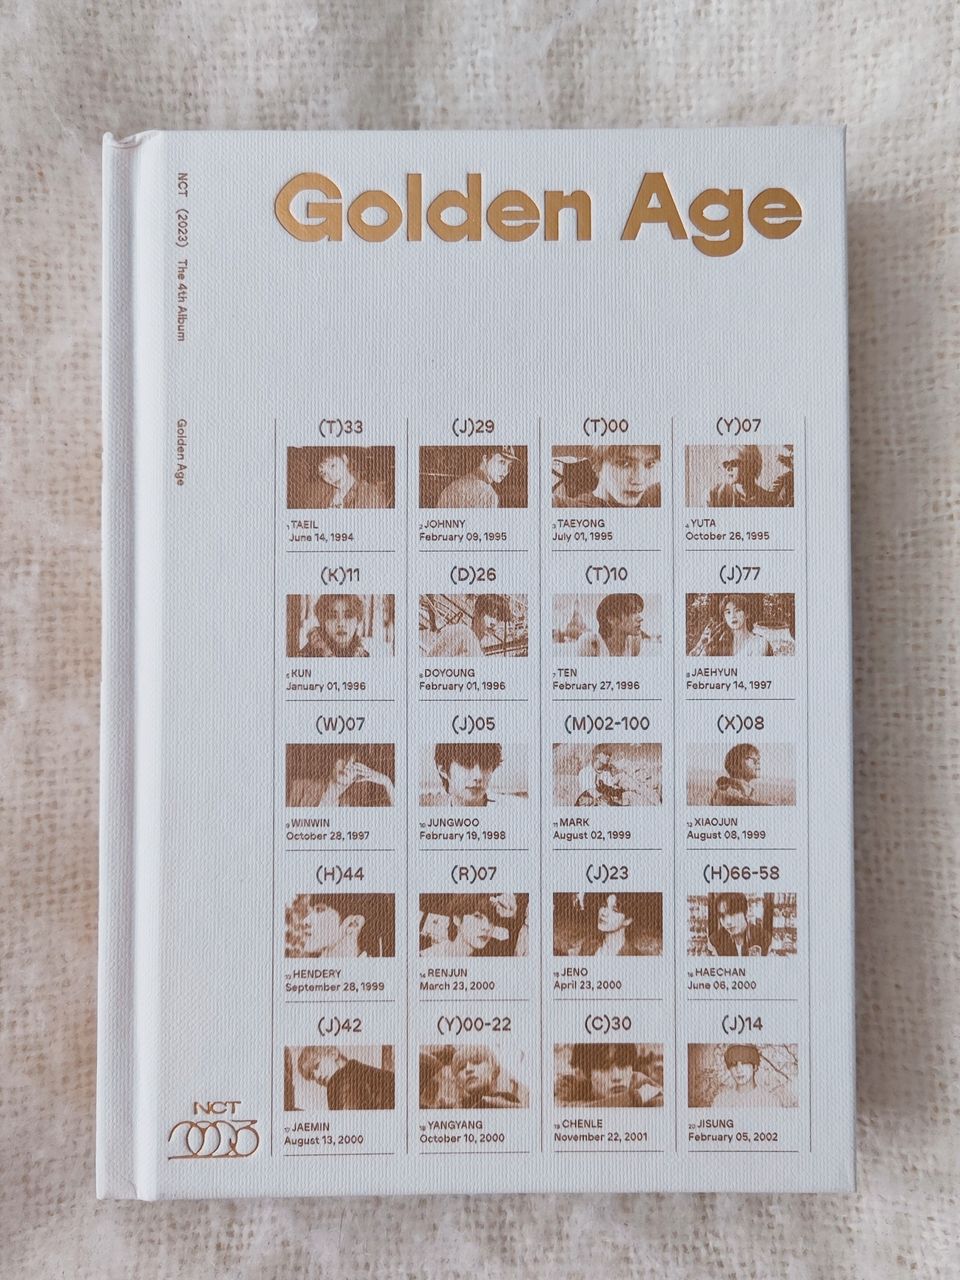 NCT Golden Age Album Archiving version